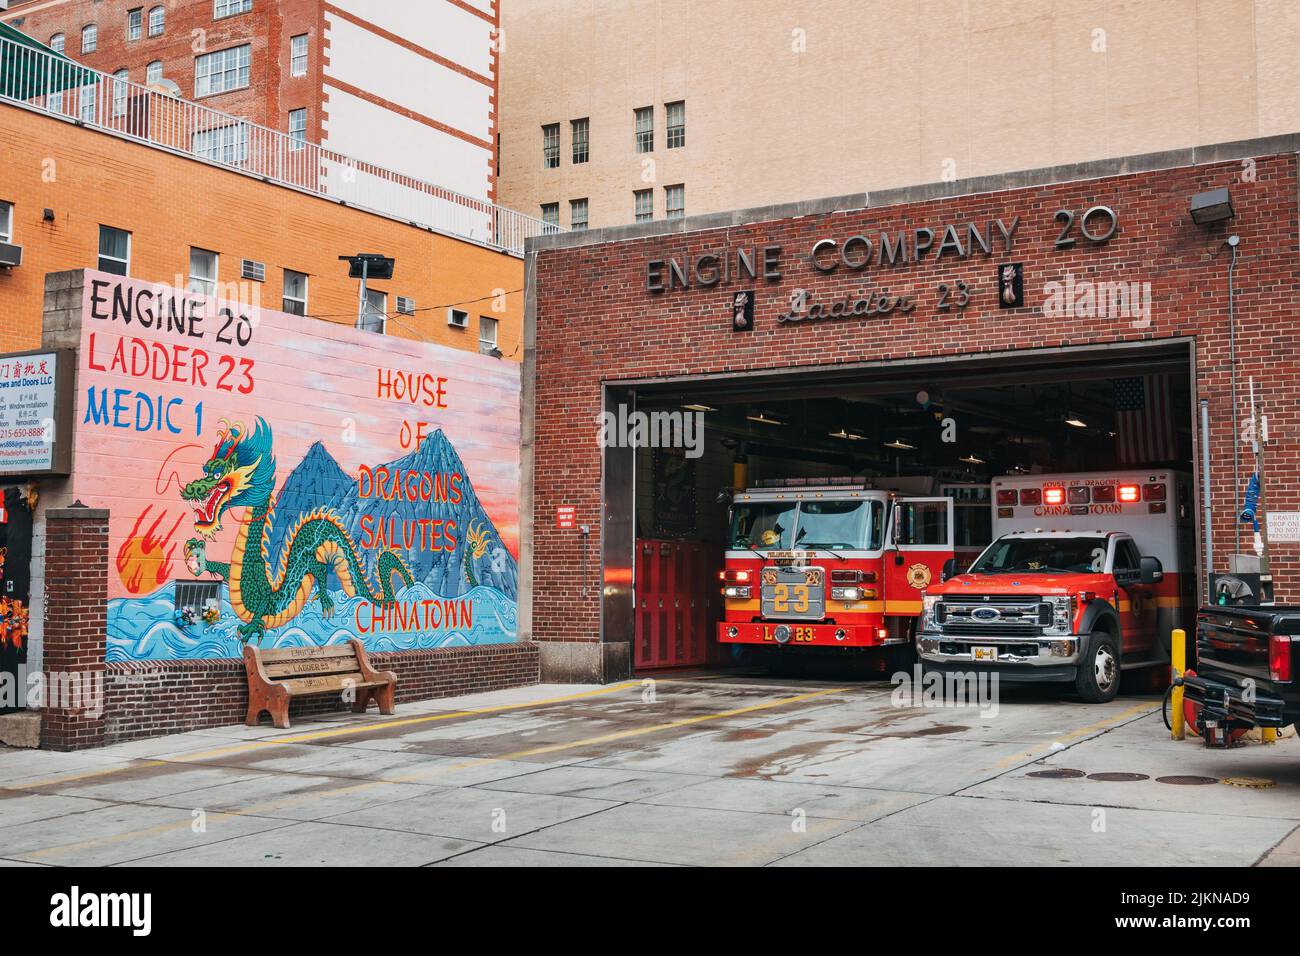 Un camion d'incendie et une ambulance dans la caserne de pompiers de Engine Company 20 à Chinatown, Philadelphie. Une fresque dragon est peinte sur le mur à l'avant Banque D'Images